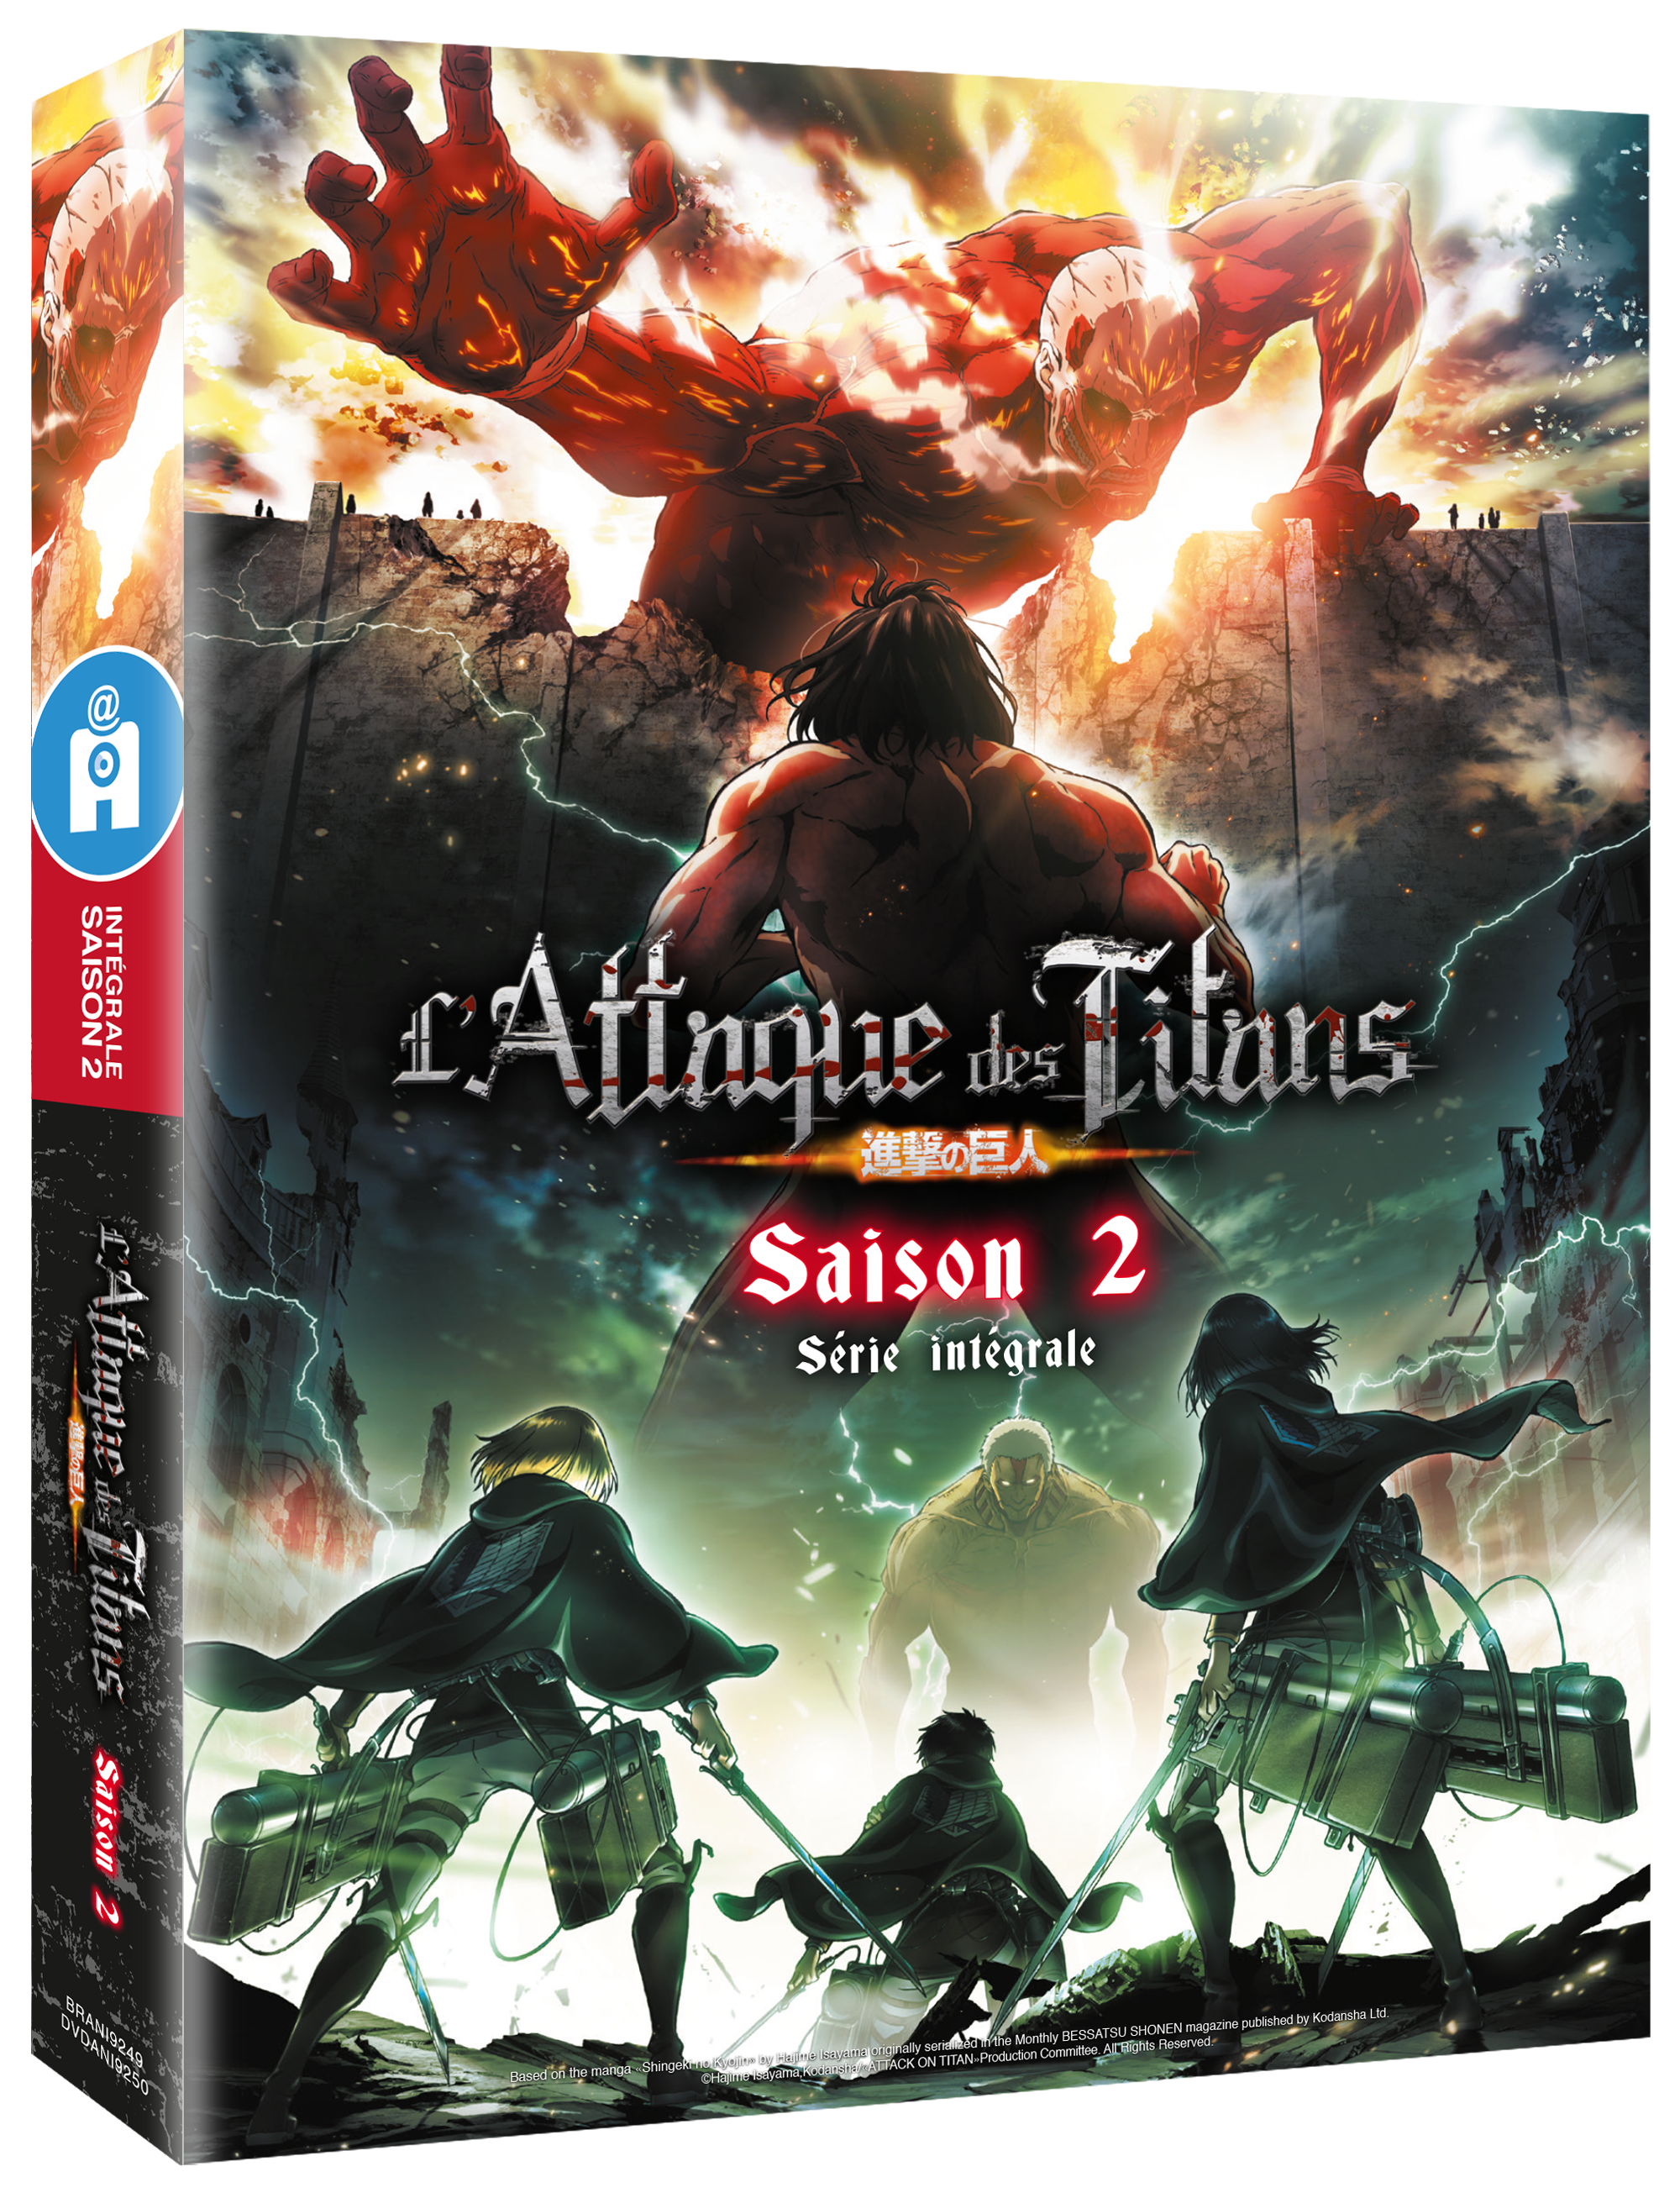 L'Attaque des Titans - 2 Volumes Tome 02 : L'Attaque des Titans Pack Offre  Découverte T01 et T02